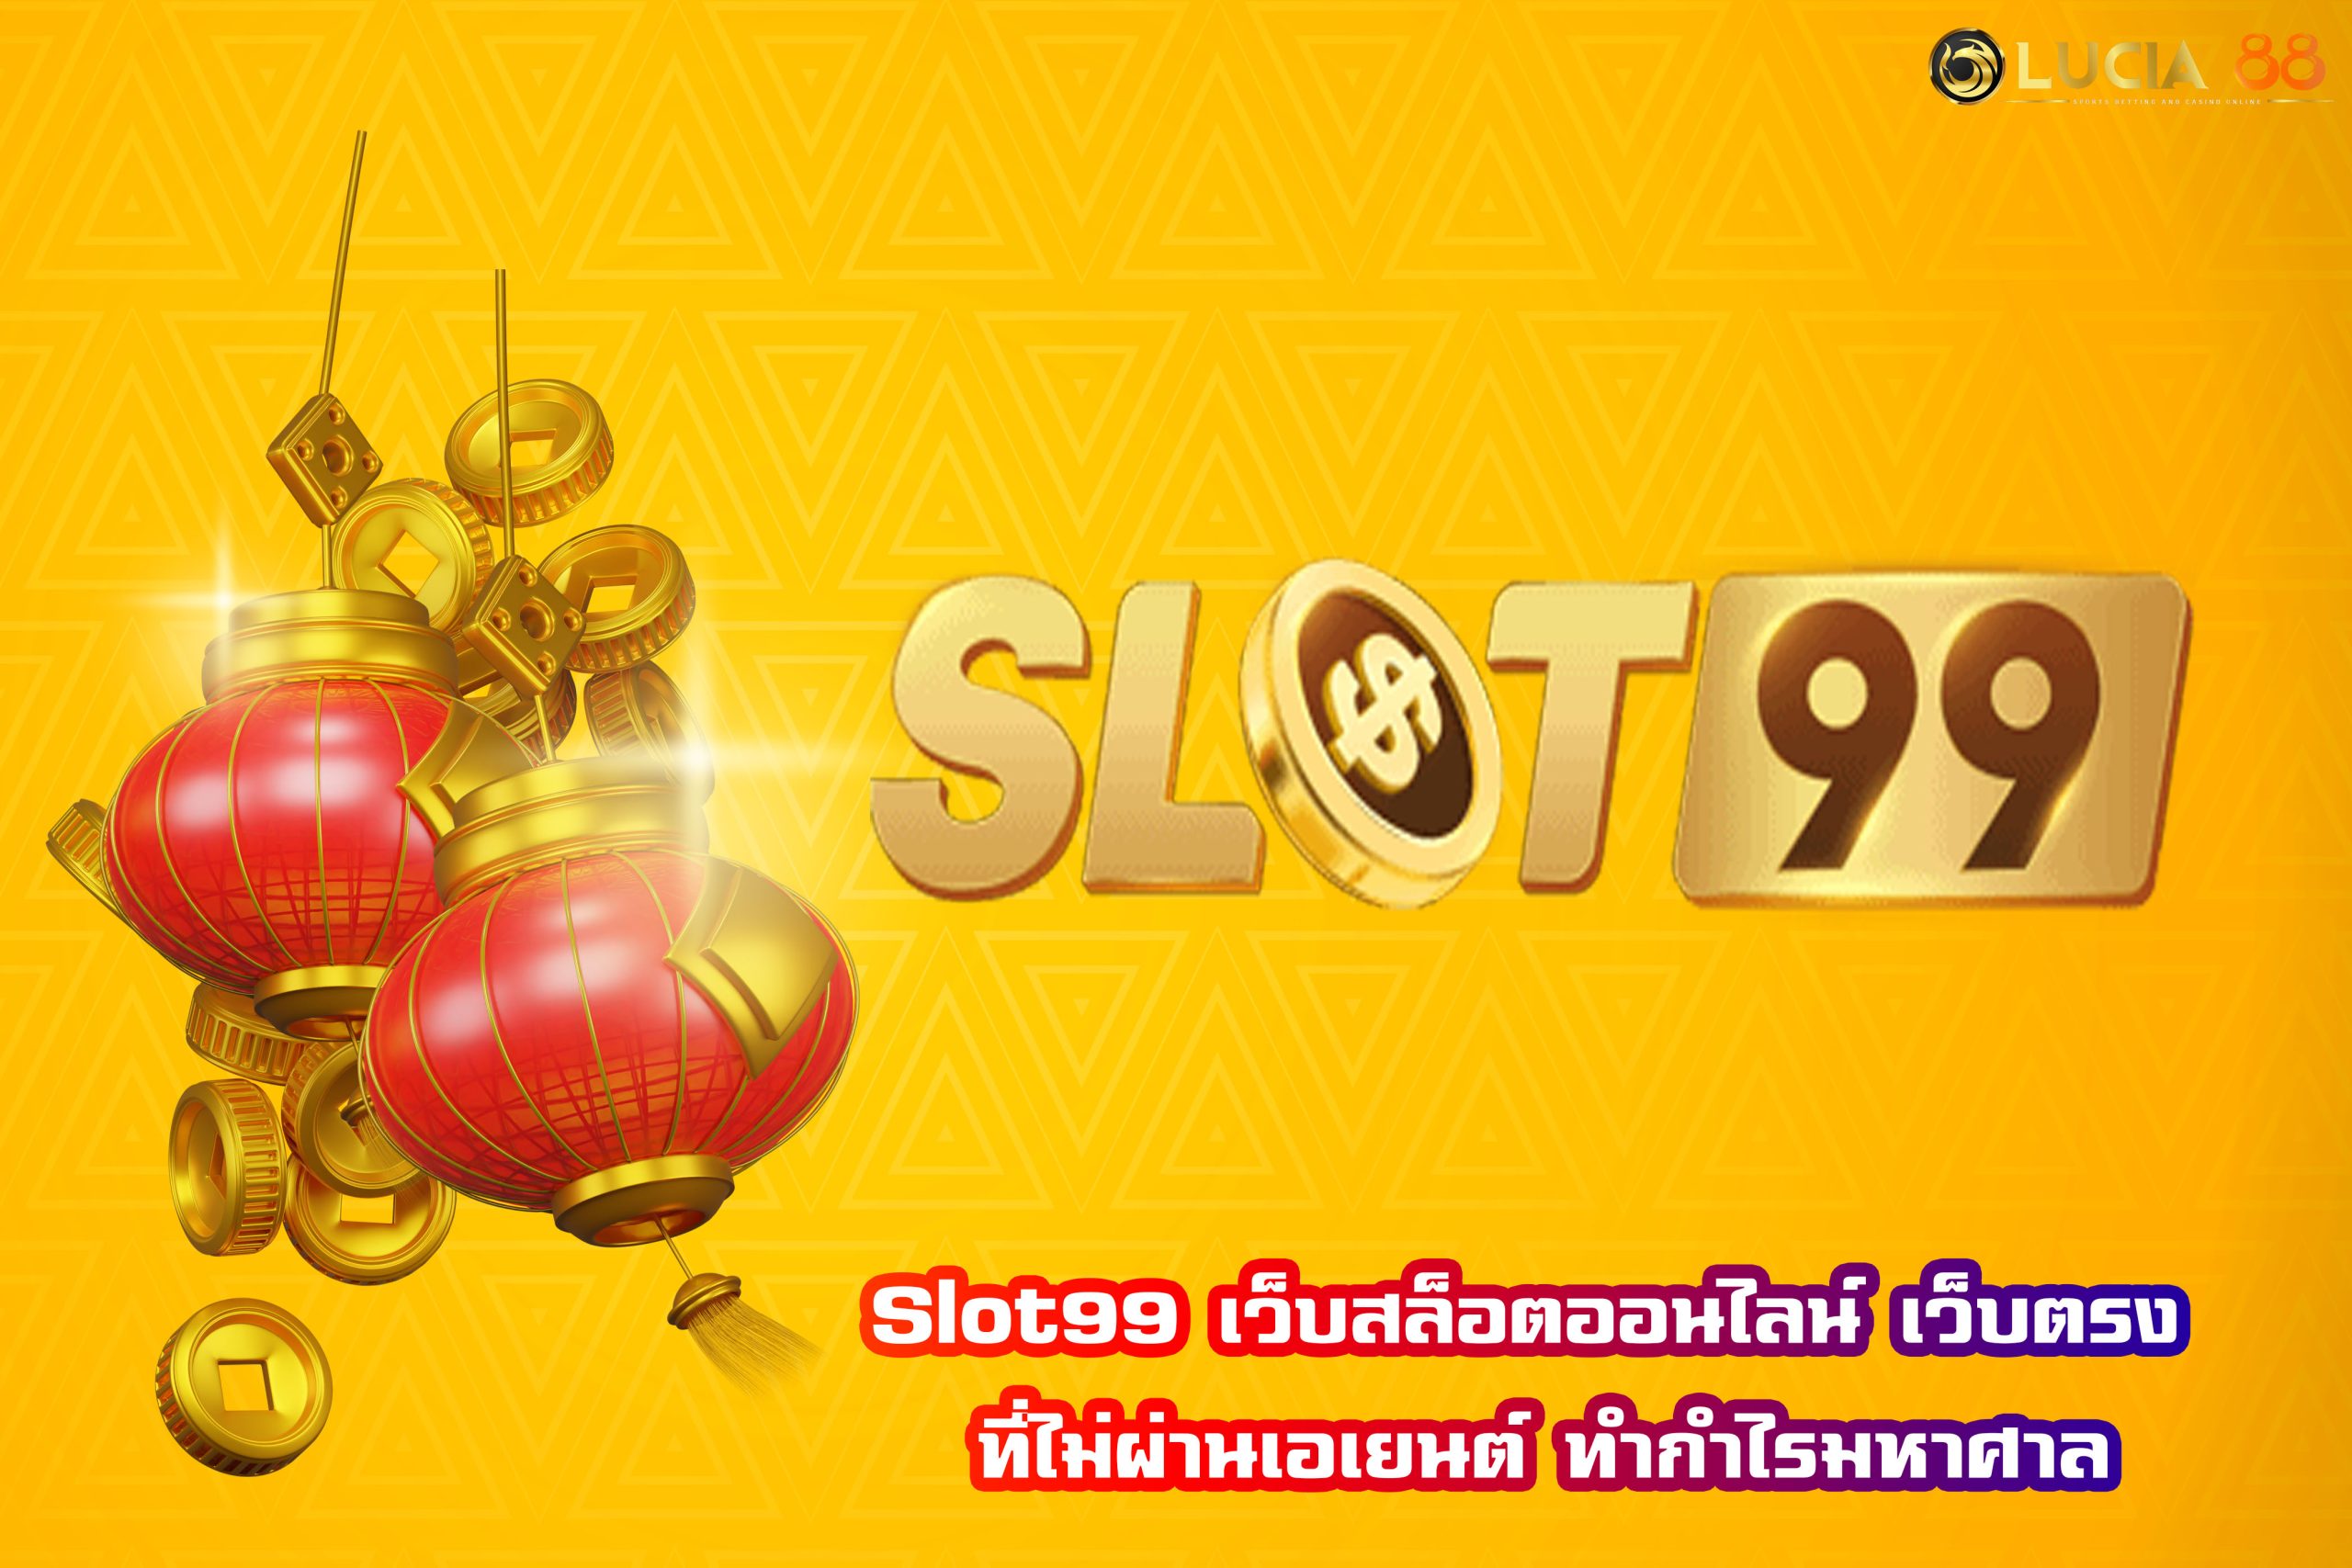 Slot99 เว็บสล็อตออนไลน์ เว็บตรง ที่ไม่ผ่านเอเยนต์ ทำกำไรมหาศาล